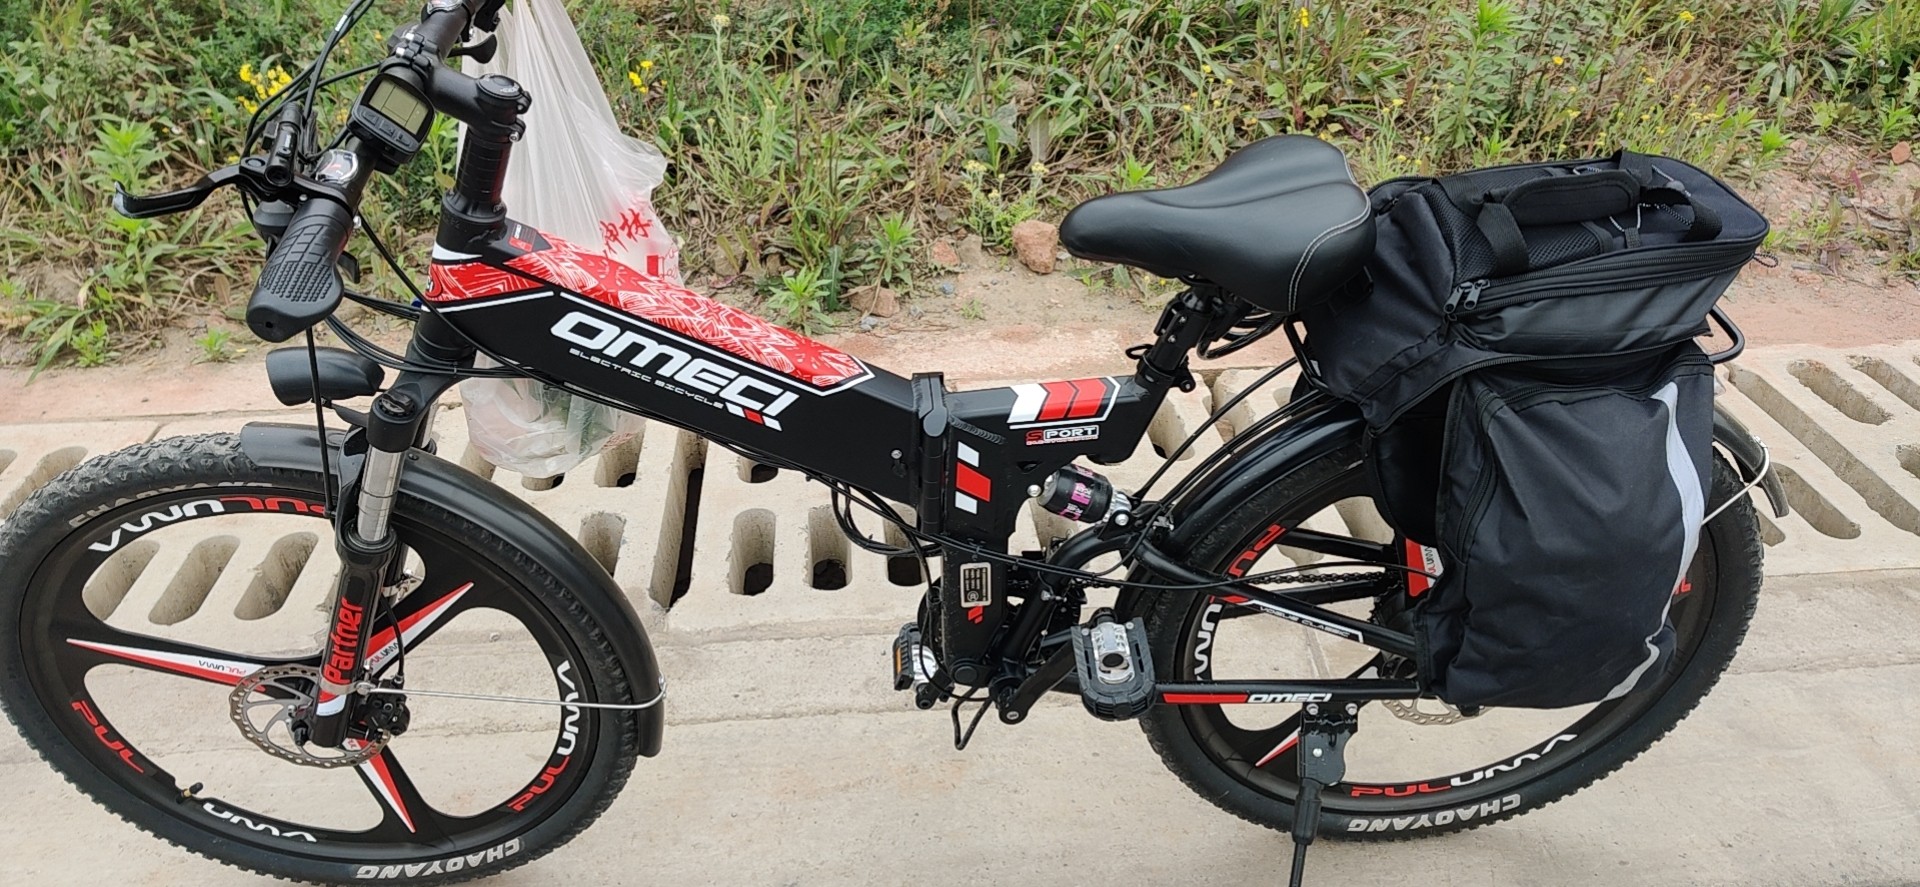 OMECI R3 Jumpy là một chiếc xe đạp điện thể thao đầy phong cách. Với thiết kế tinh tế và hiện đại, chiếc xe đem lại cảm giác di chuyển mạnh mẽ, nhanh chóng và đầy thú vị. Hãy đến và trải nghiệm cùng OMECI R3 Jumpy nhé!